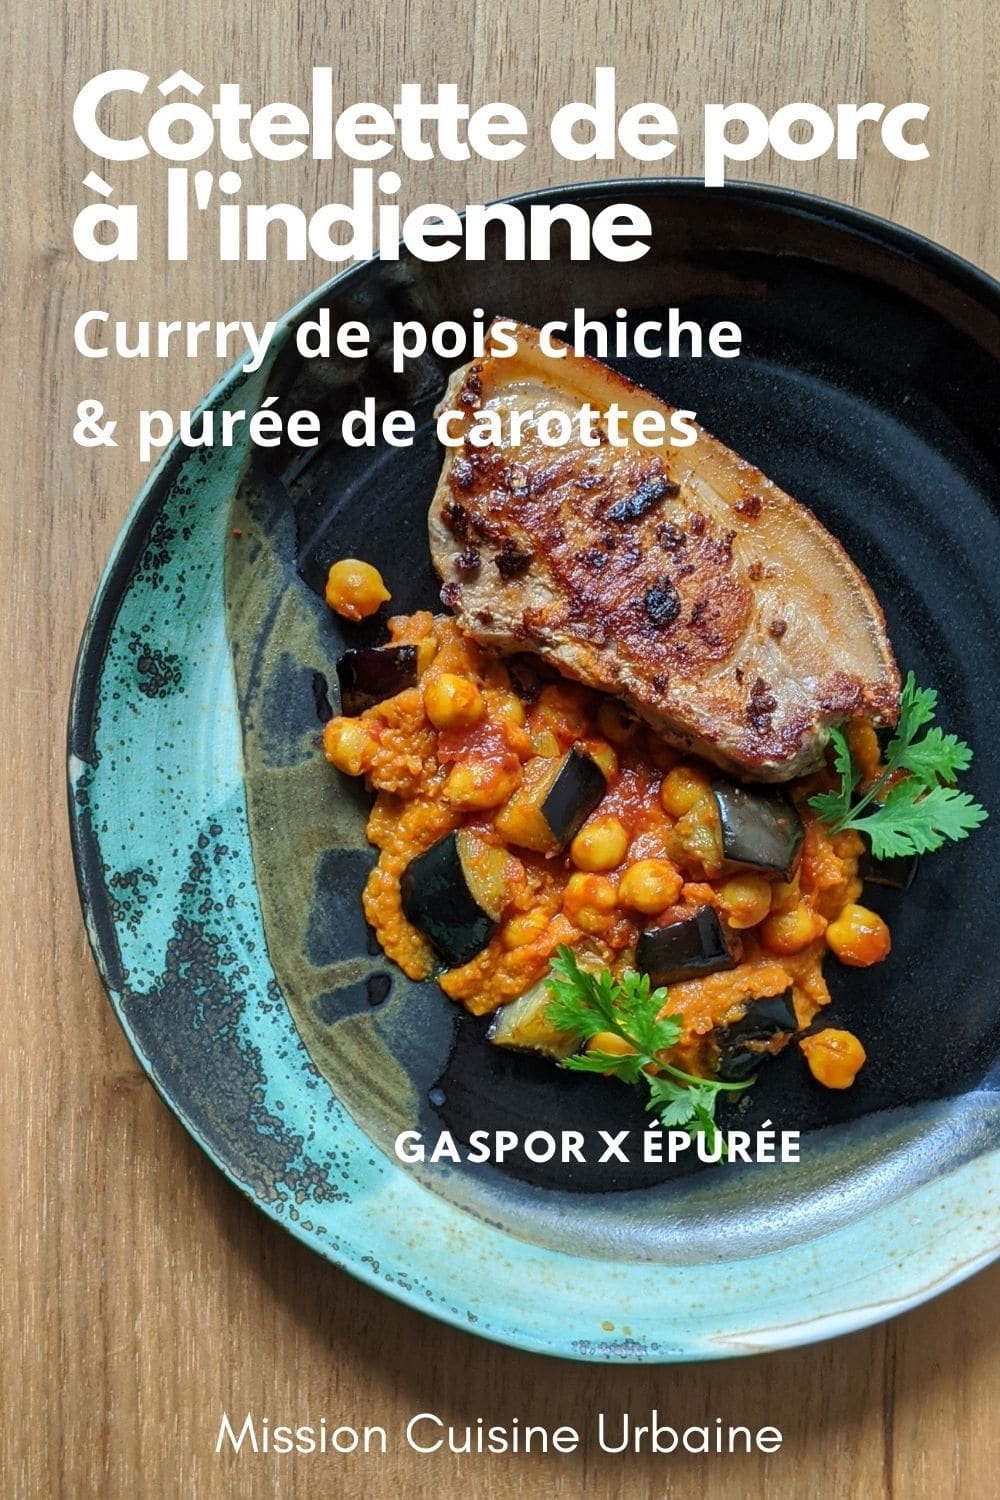 Côtelette de porc et curry pois chiche et aubergine